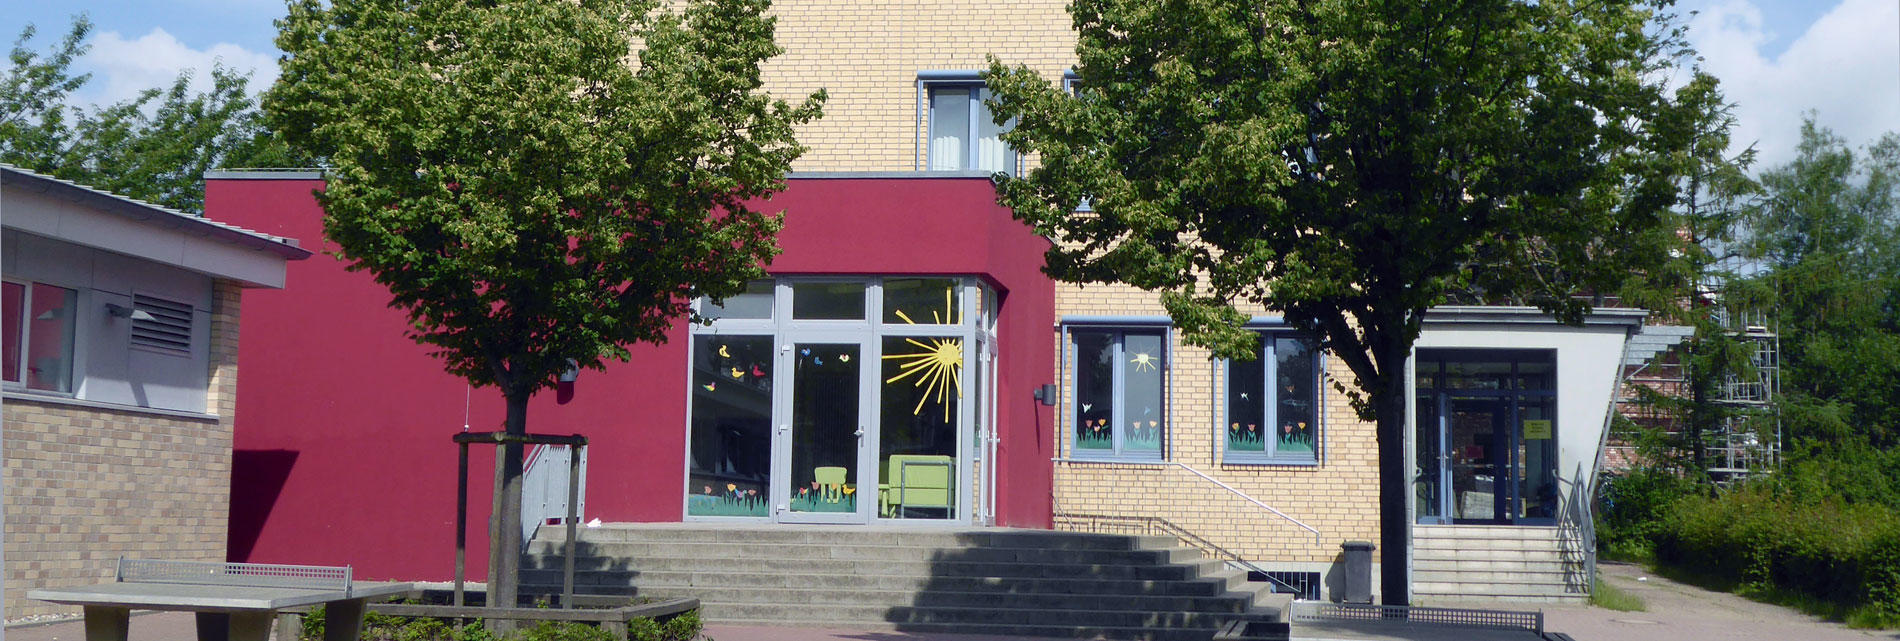 Ostsee-Grundschule Scharbeutz